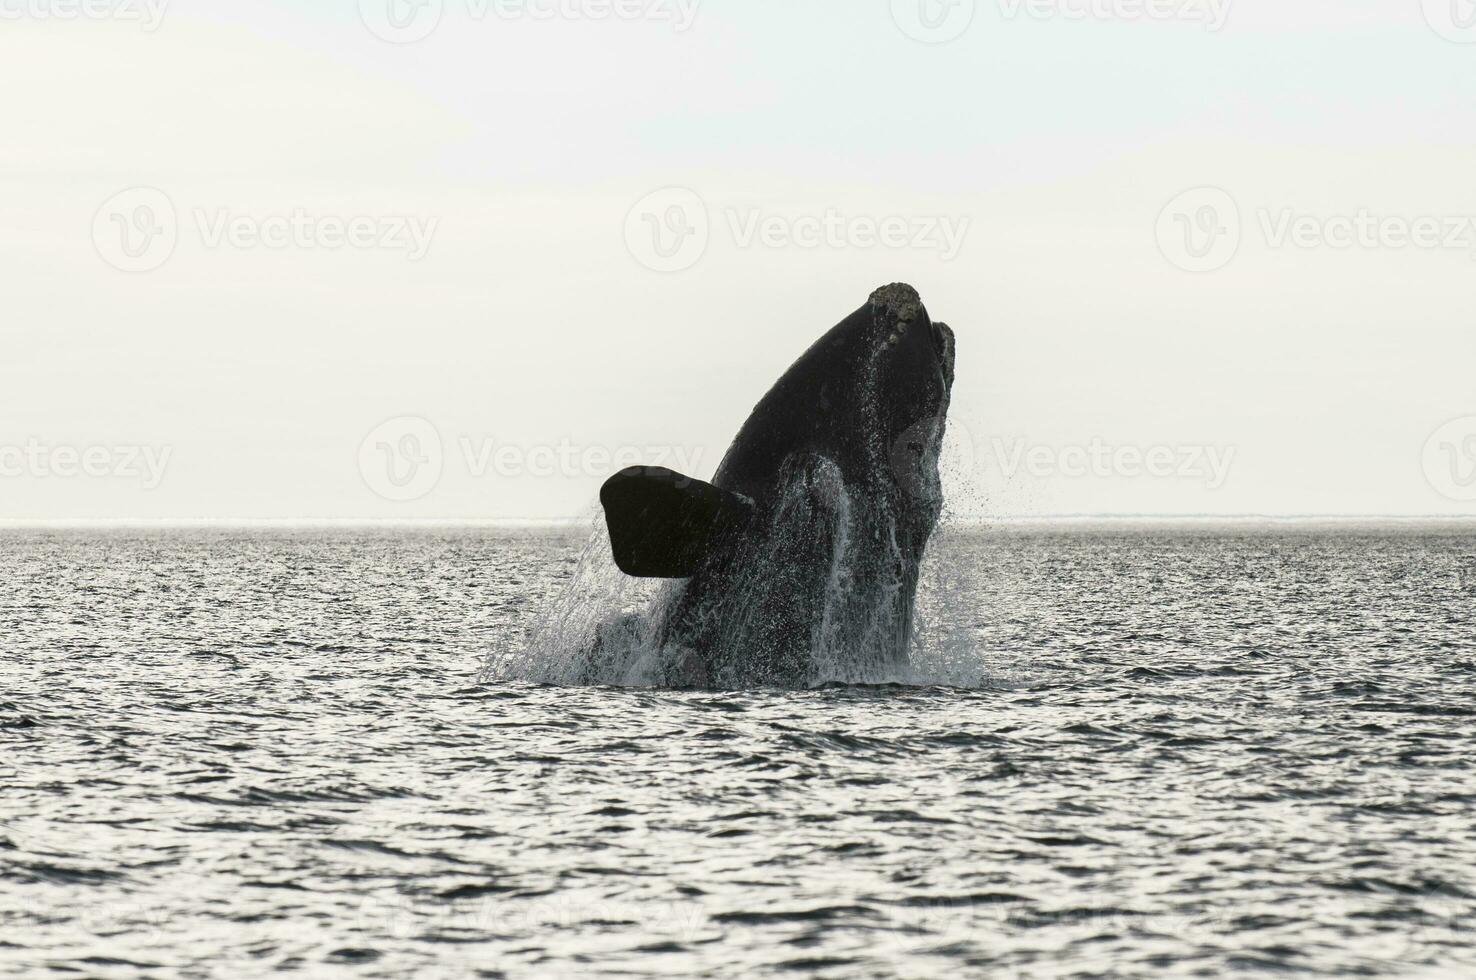 grande ballena saltando en el agua foto